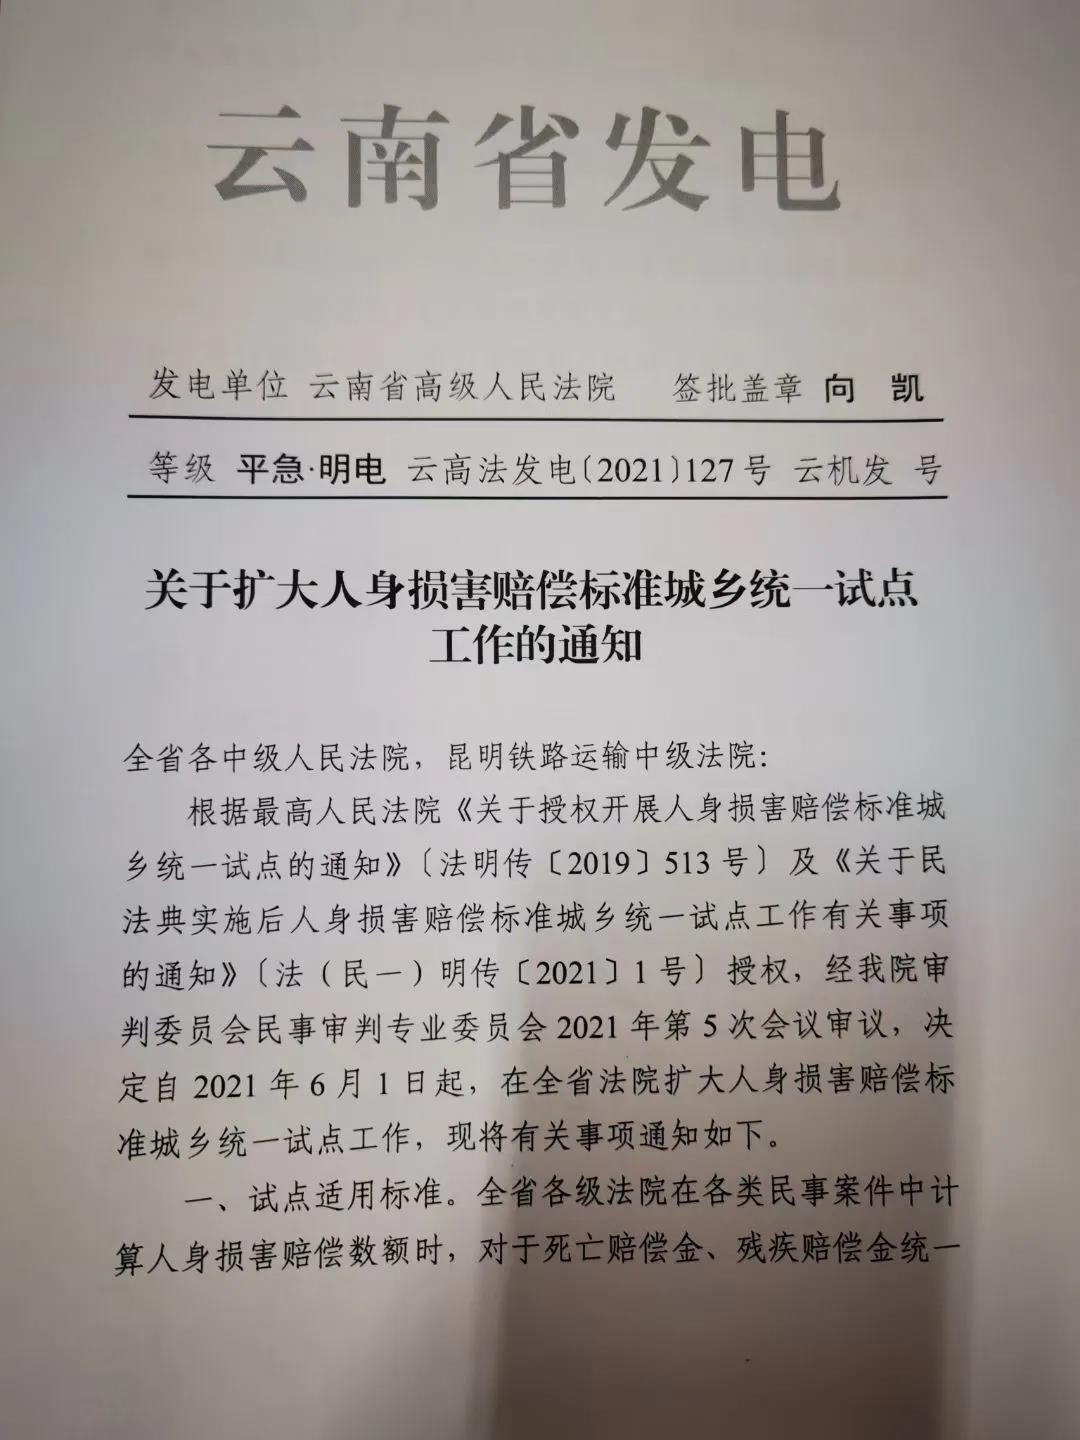 深圳律师云南省高级人民法院关于扩大人身损害赔偿标准城乡统一试点工作的通知